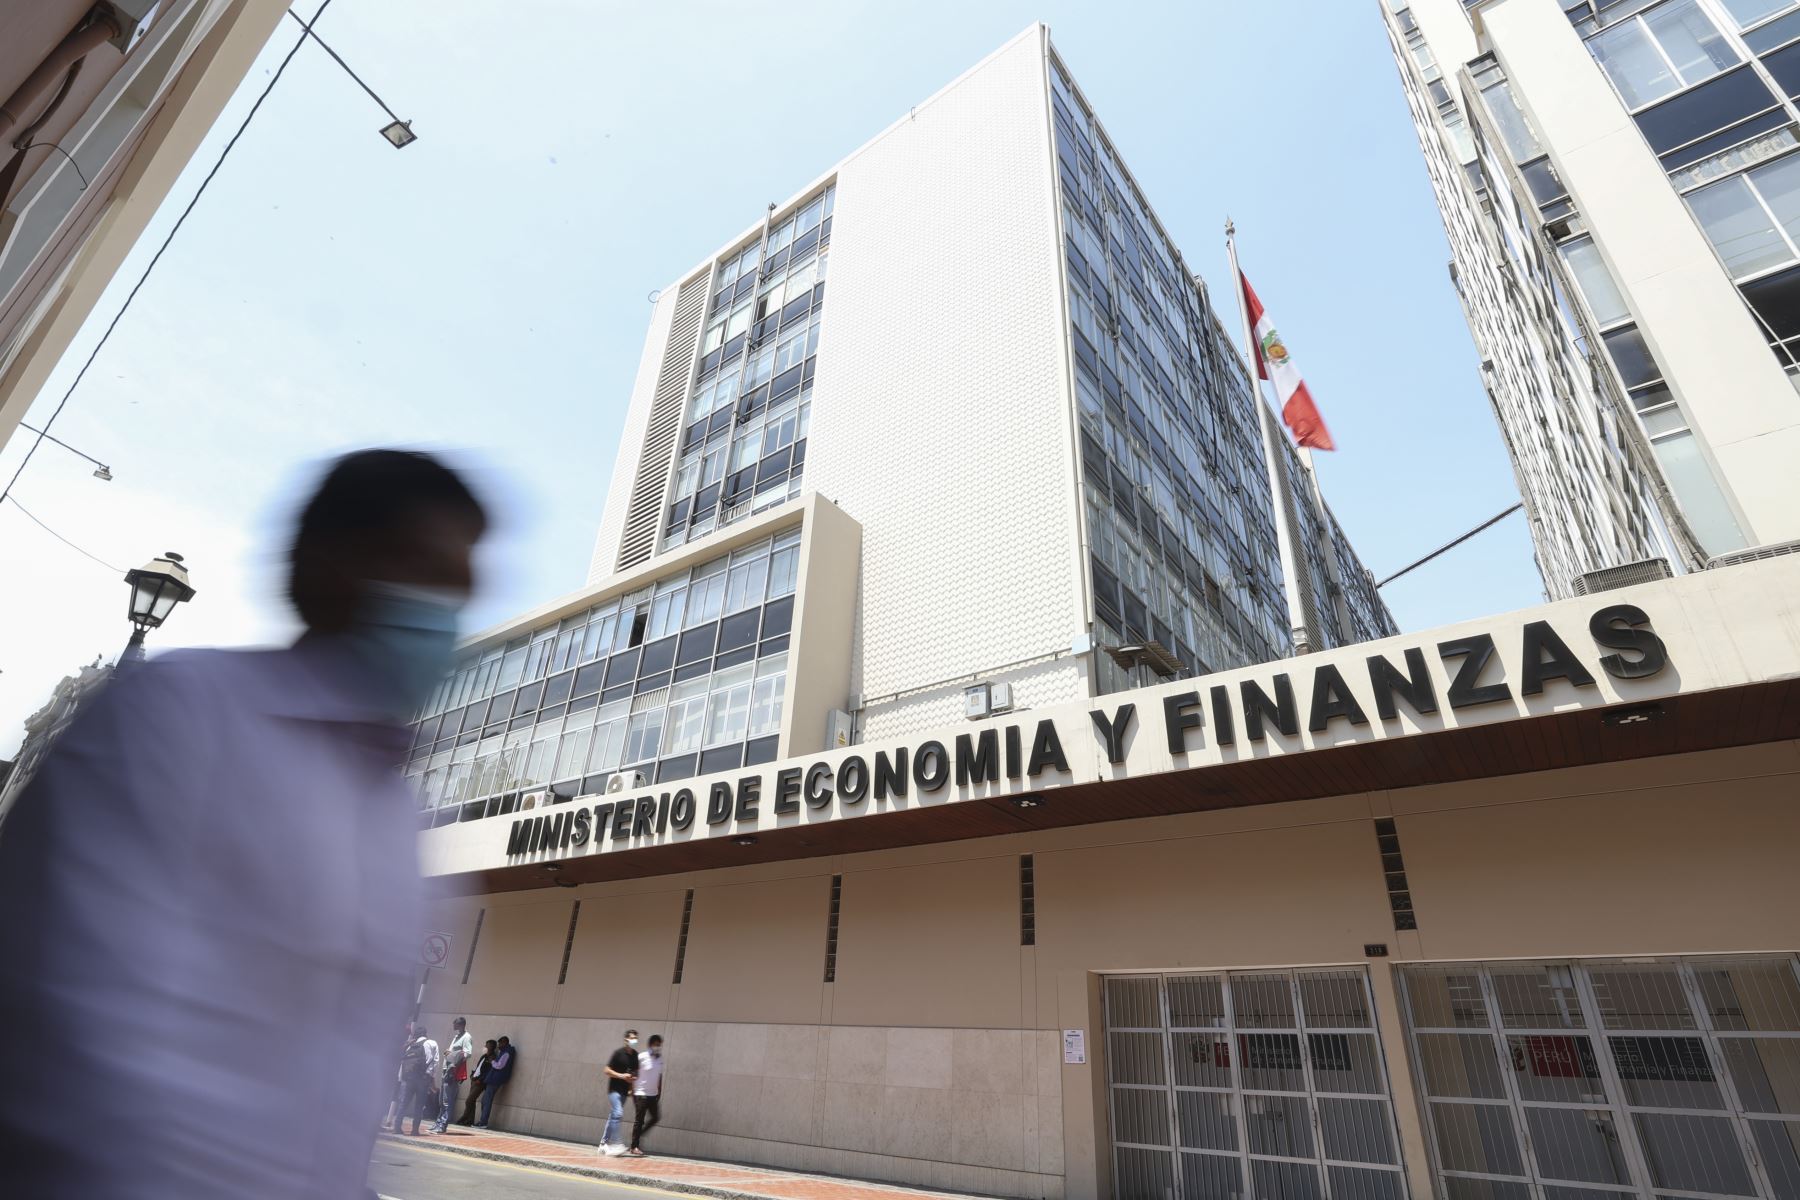 Sede central del Ministerio de Economía y Finanzas (MEF). Foto: ANDINA/Jhonel Rodríguez Robles